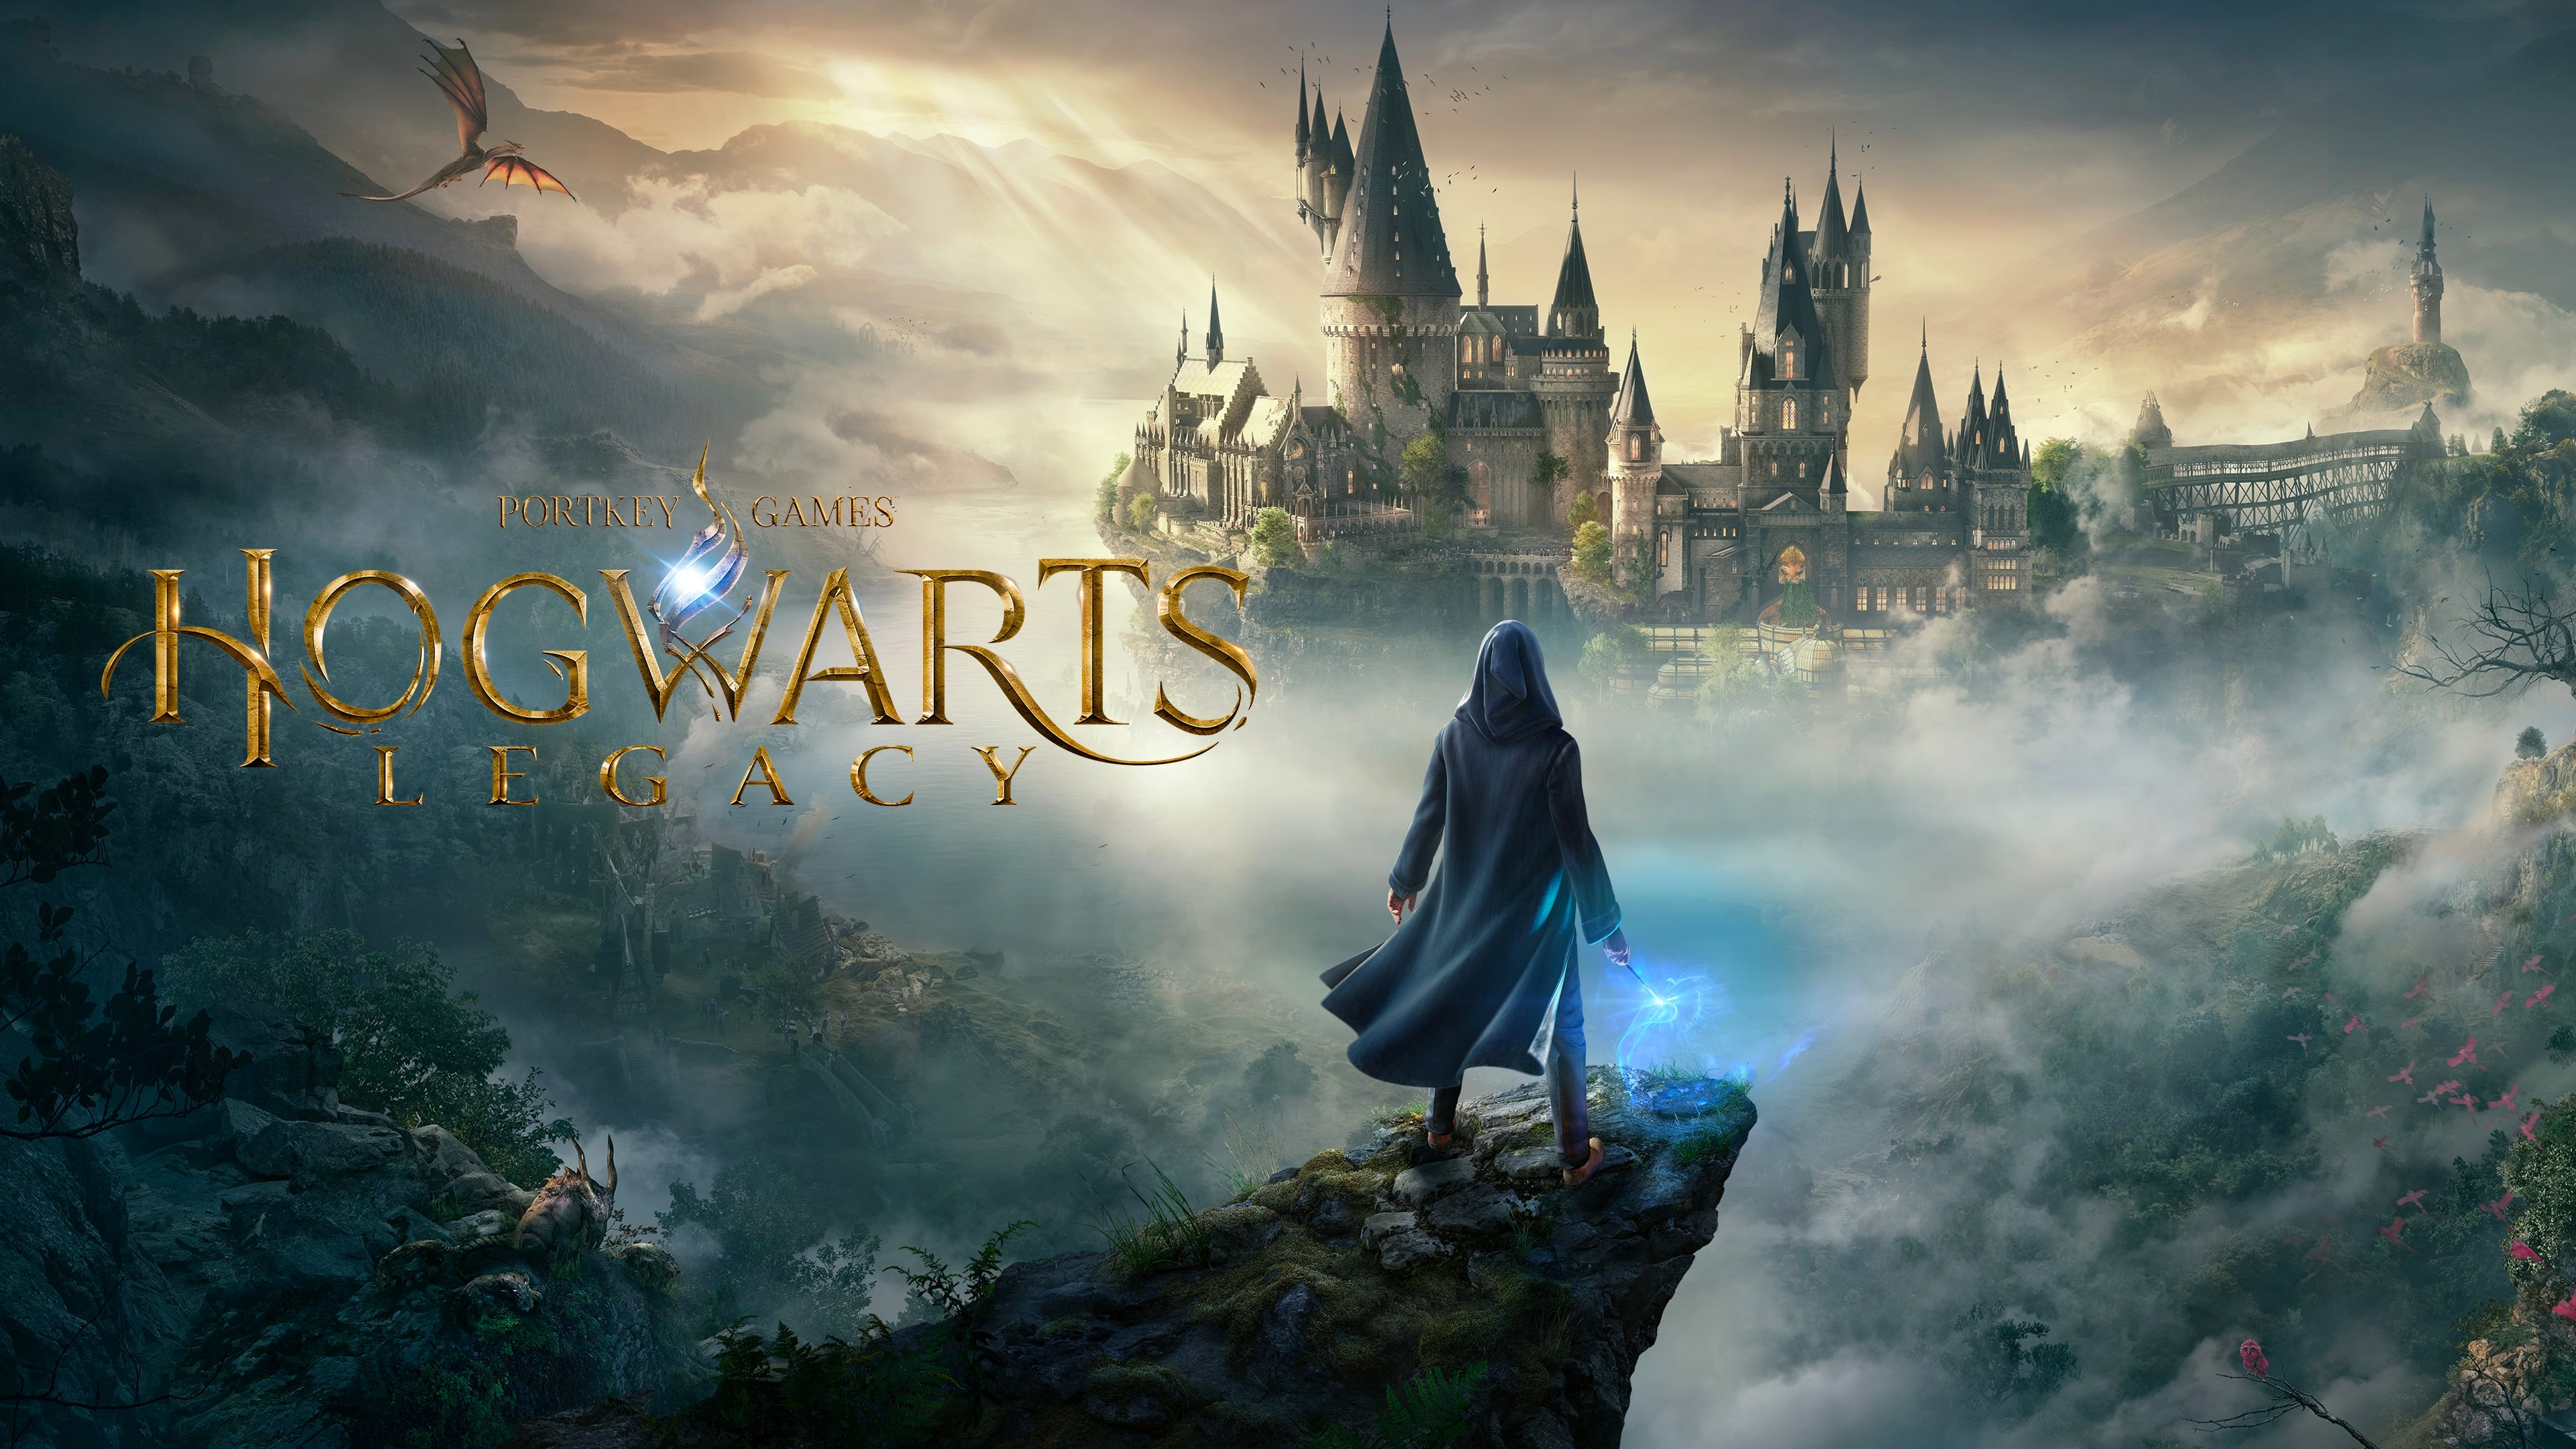 Hogwarts Legacy: Digital Deluxe Edition - Xbox [Digital Code]